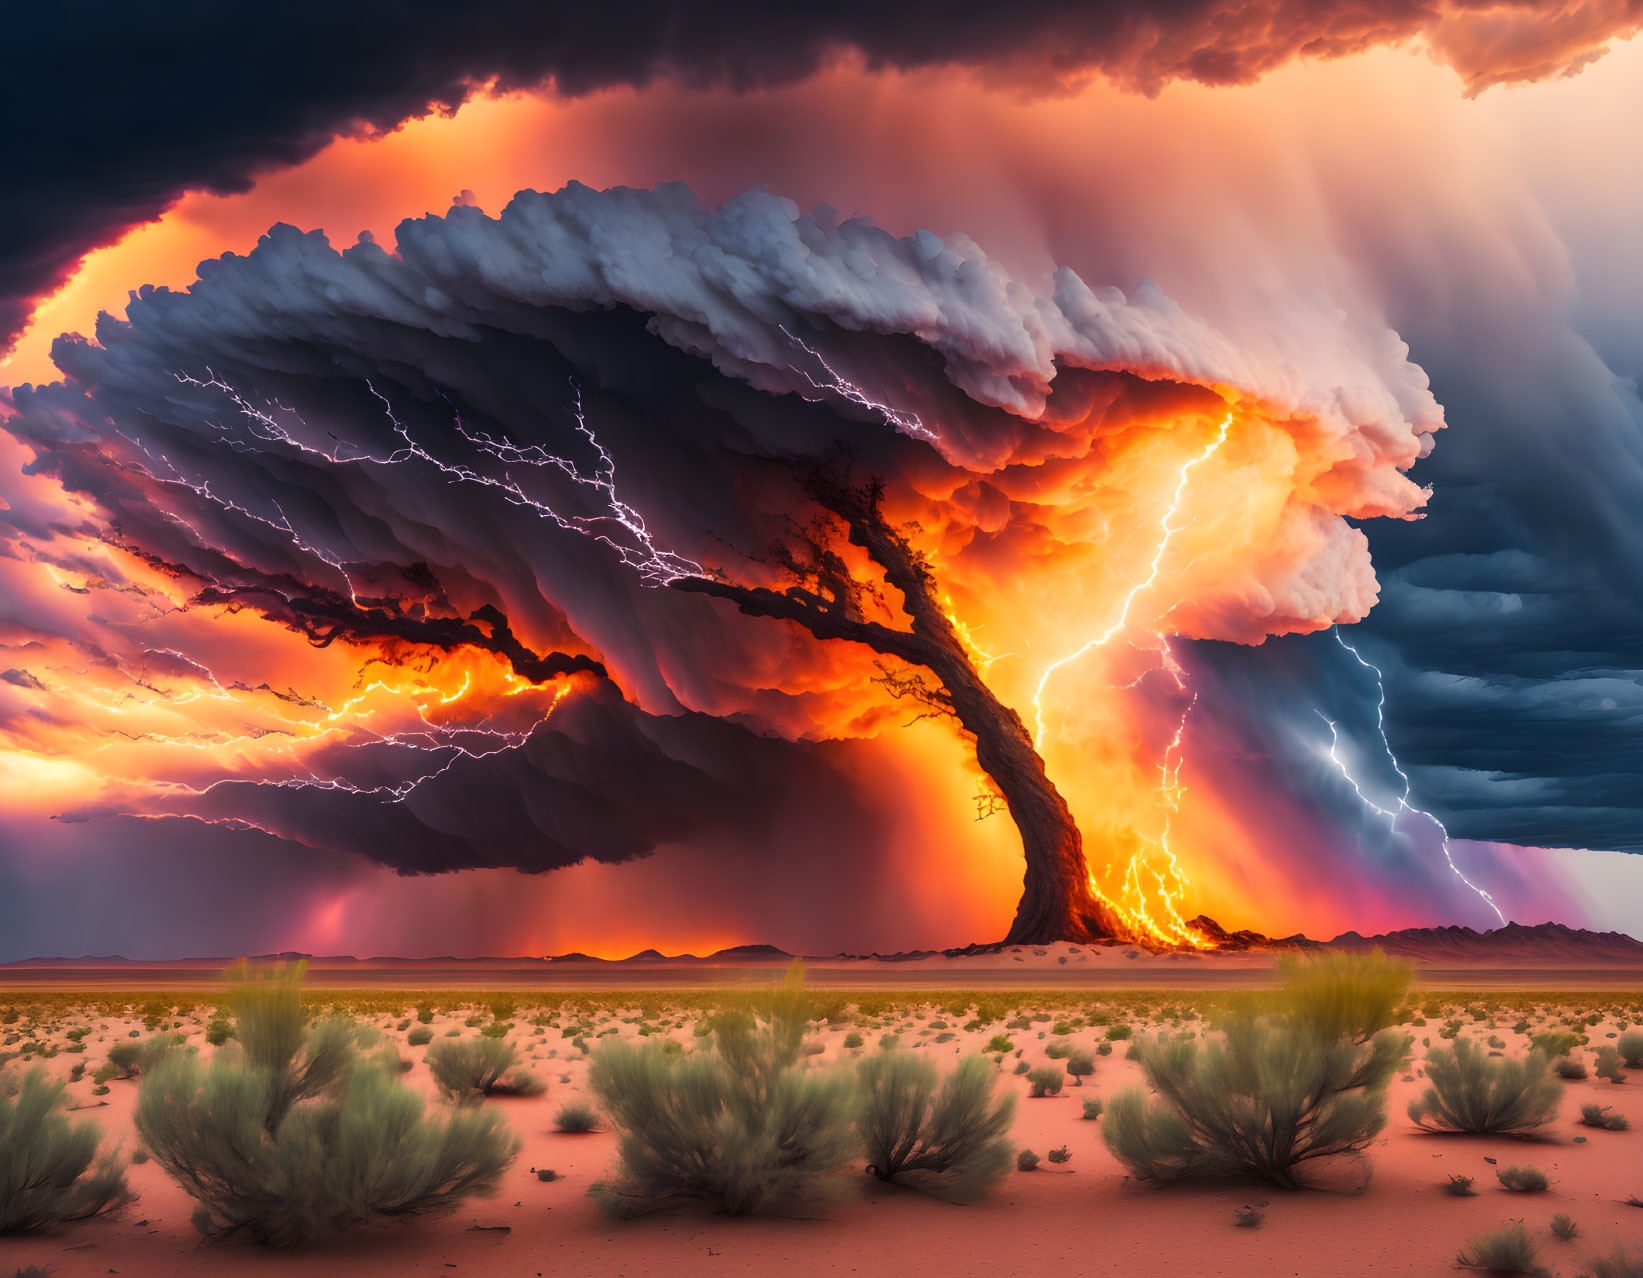 Imposing supercell thunderstorm with lightning strikes over desert landscape at sunset